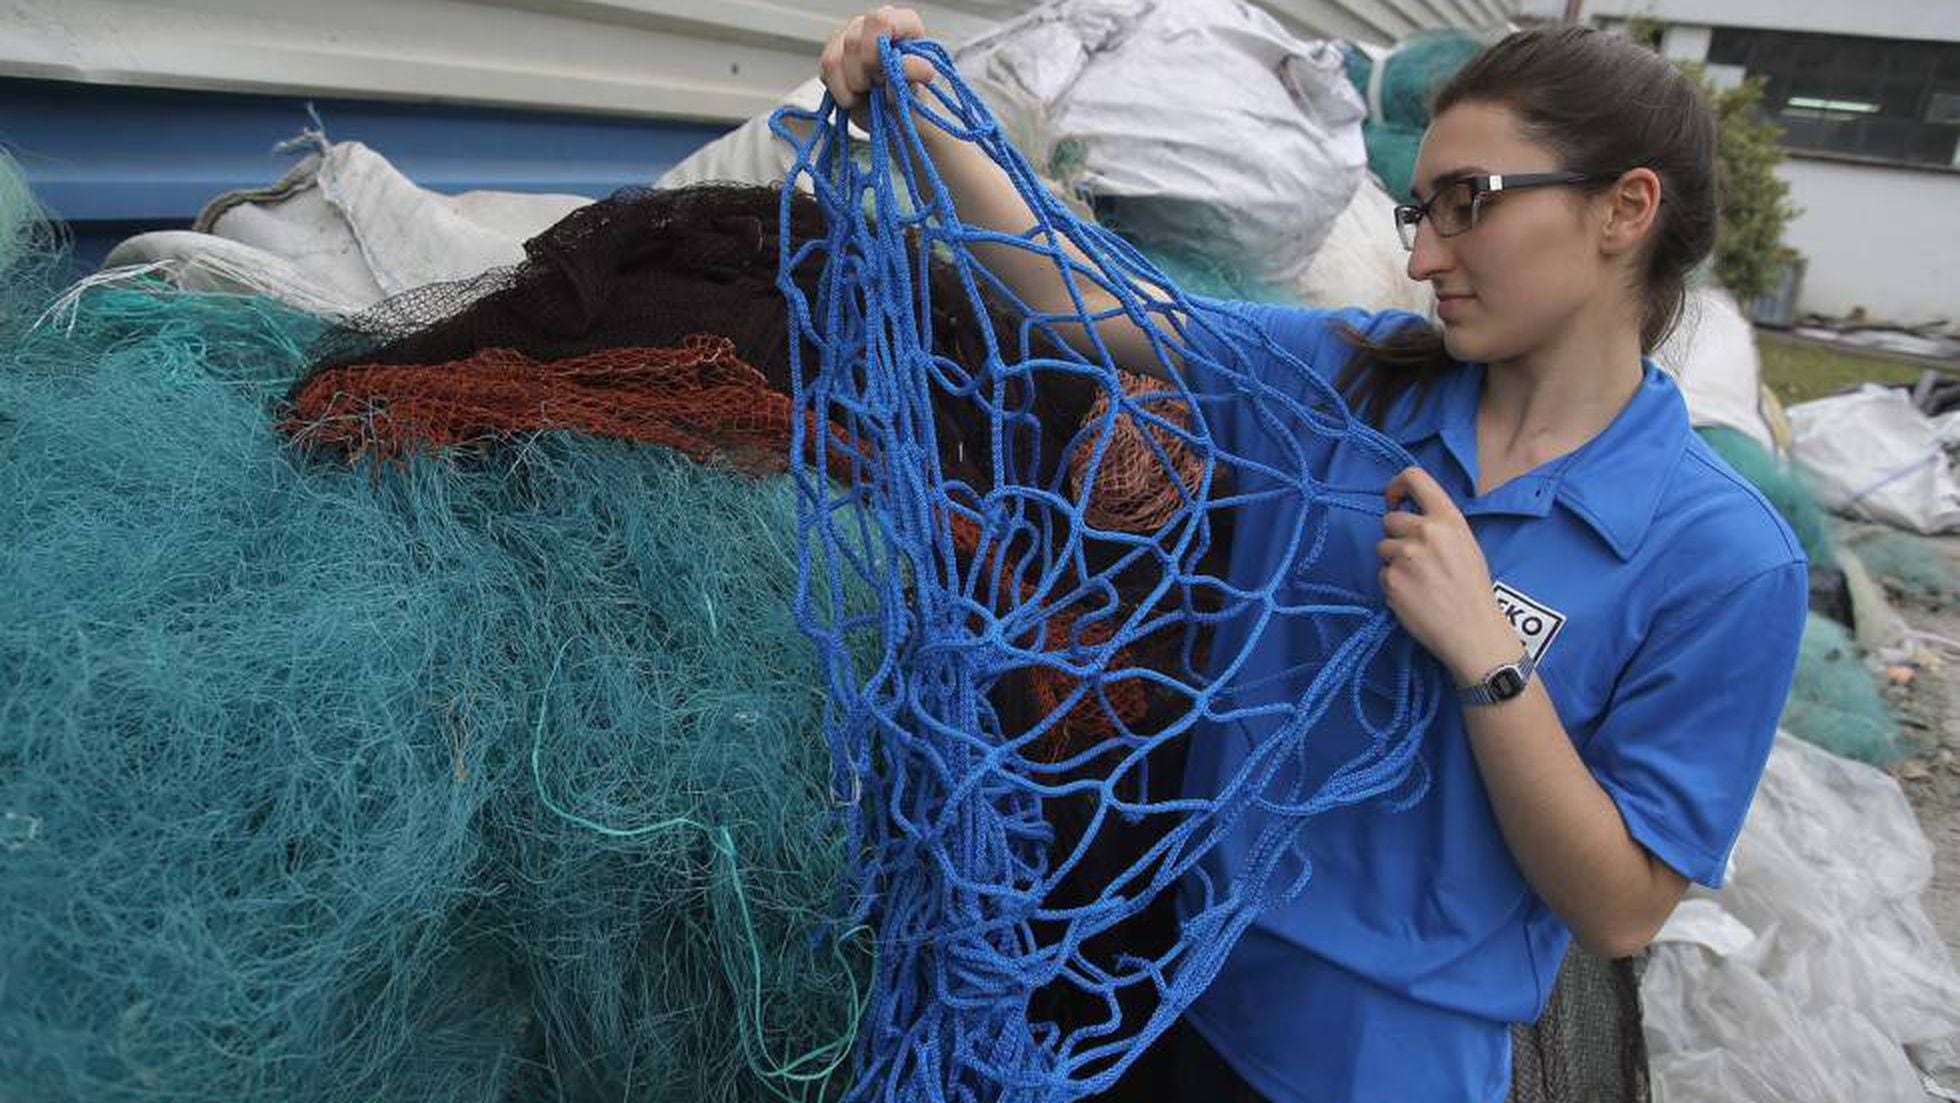 Desarrollan nuevos envases a partir de redes de pesca recicladas